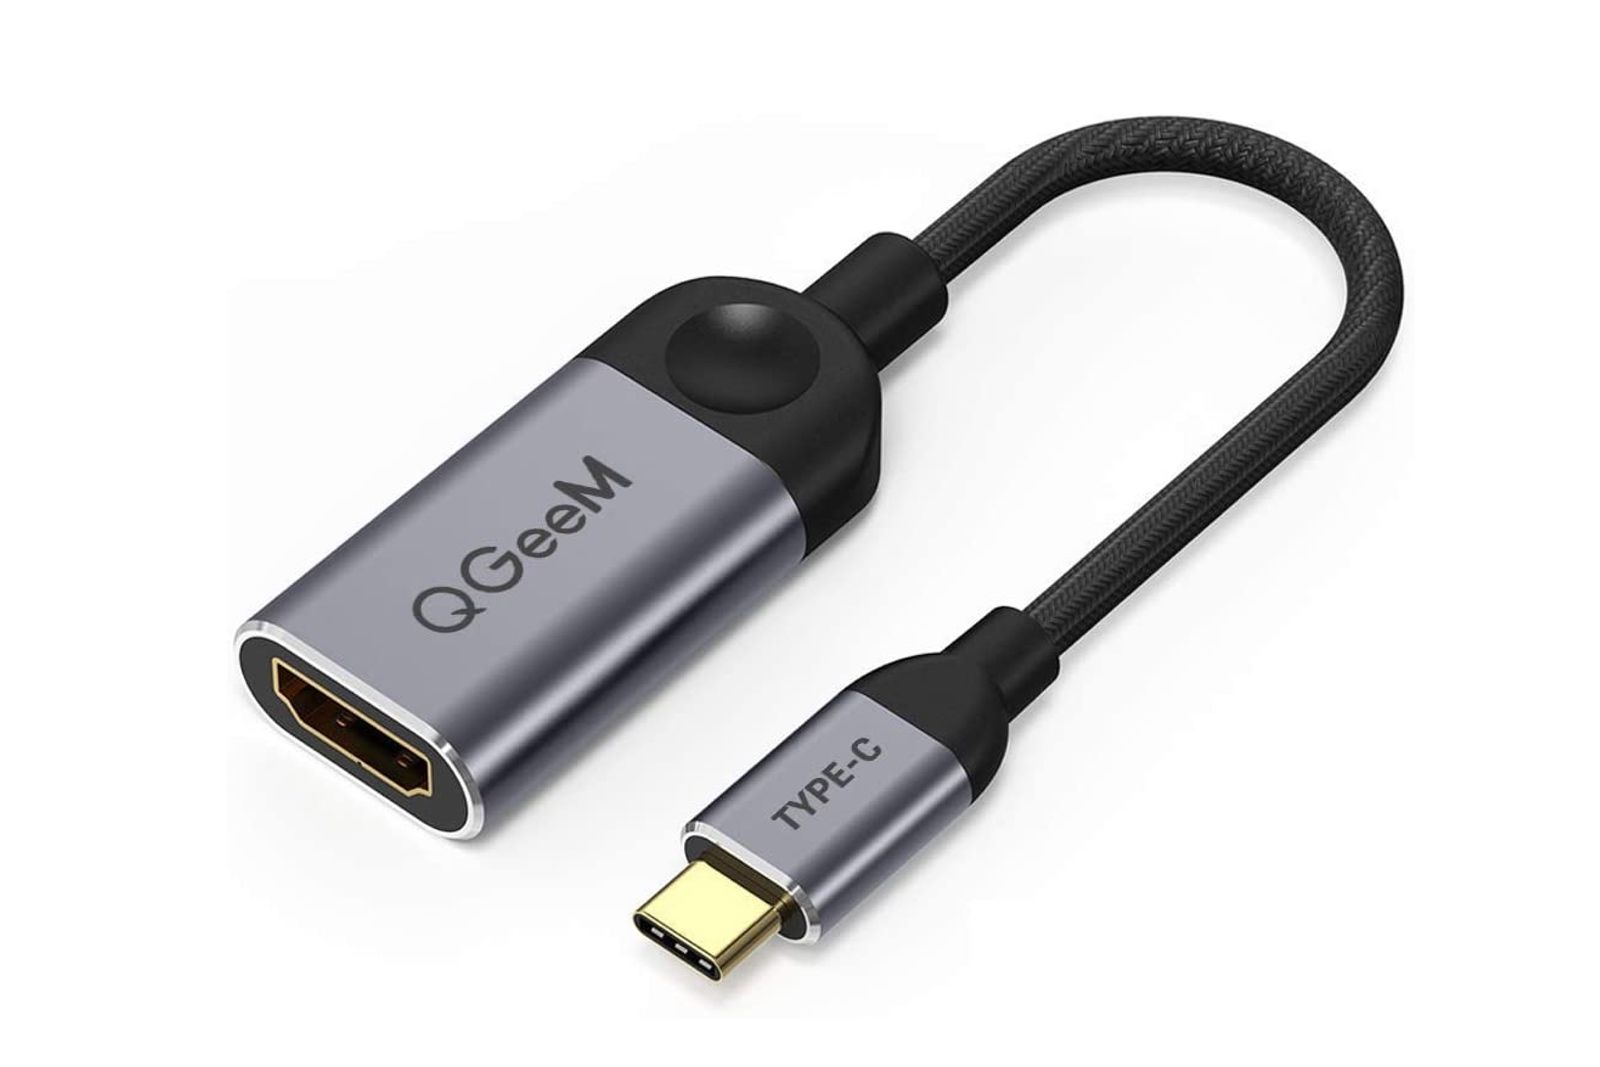 Las mejores ofertas en USB a HDMI